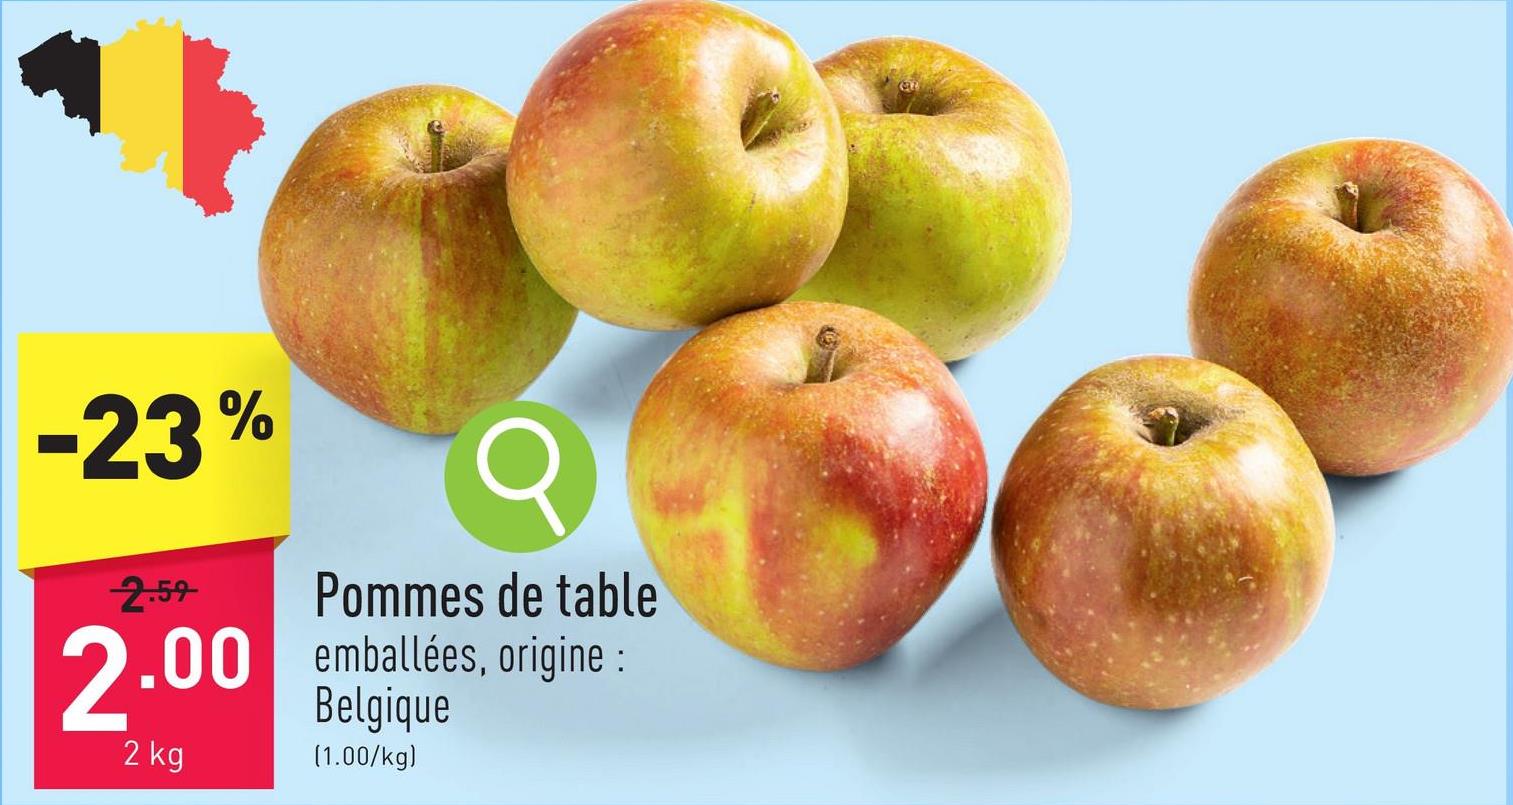 Pommes de table emballées, origine : Belgique